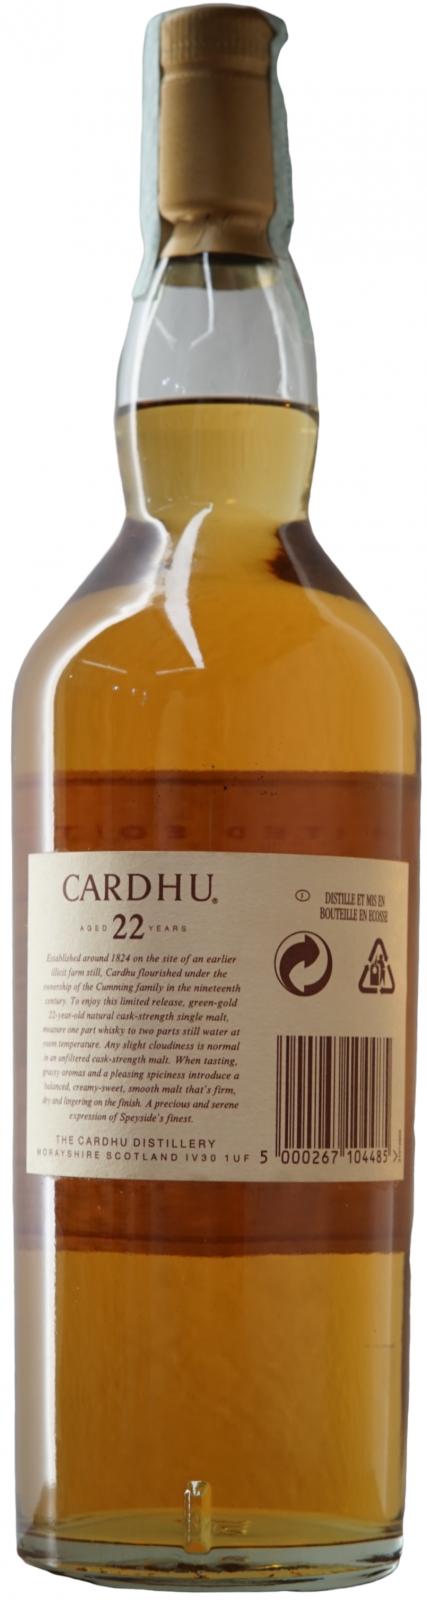 Cardhu 1982